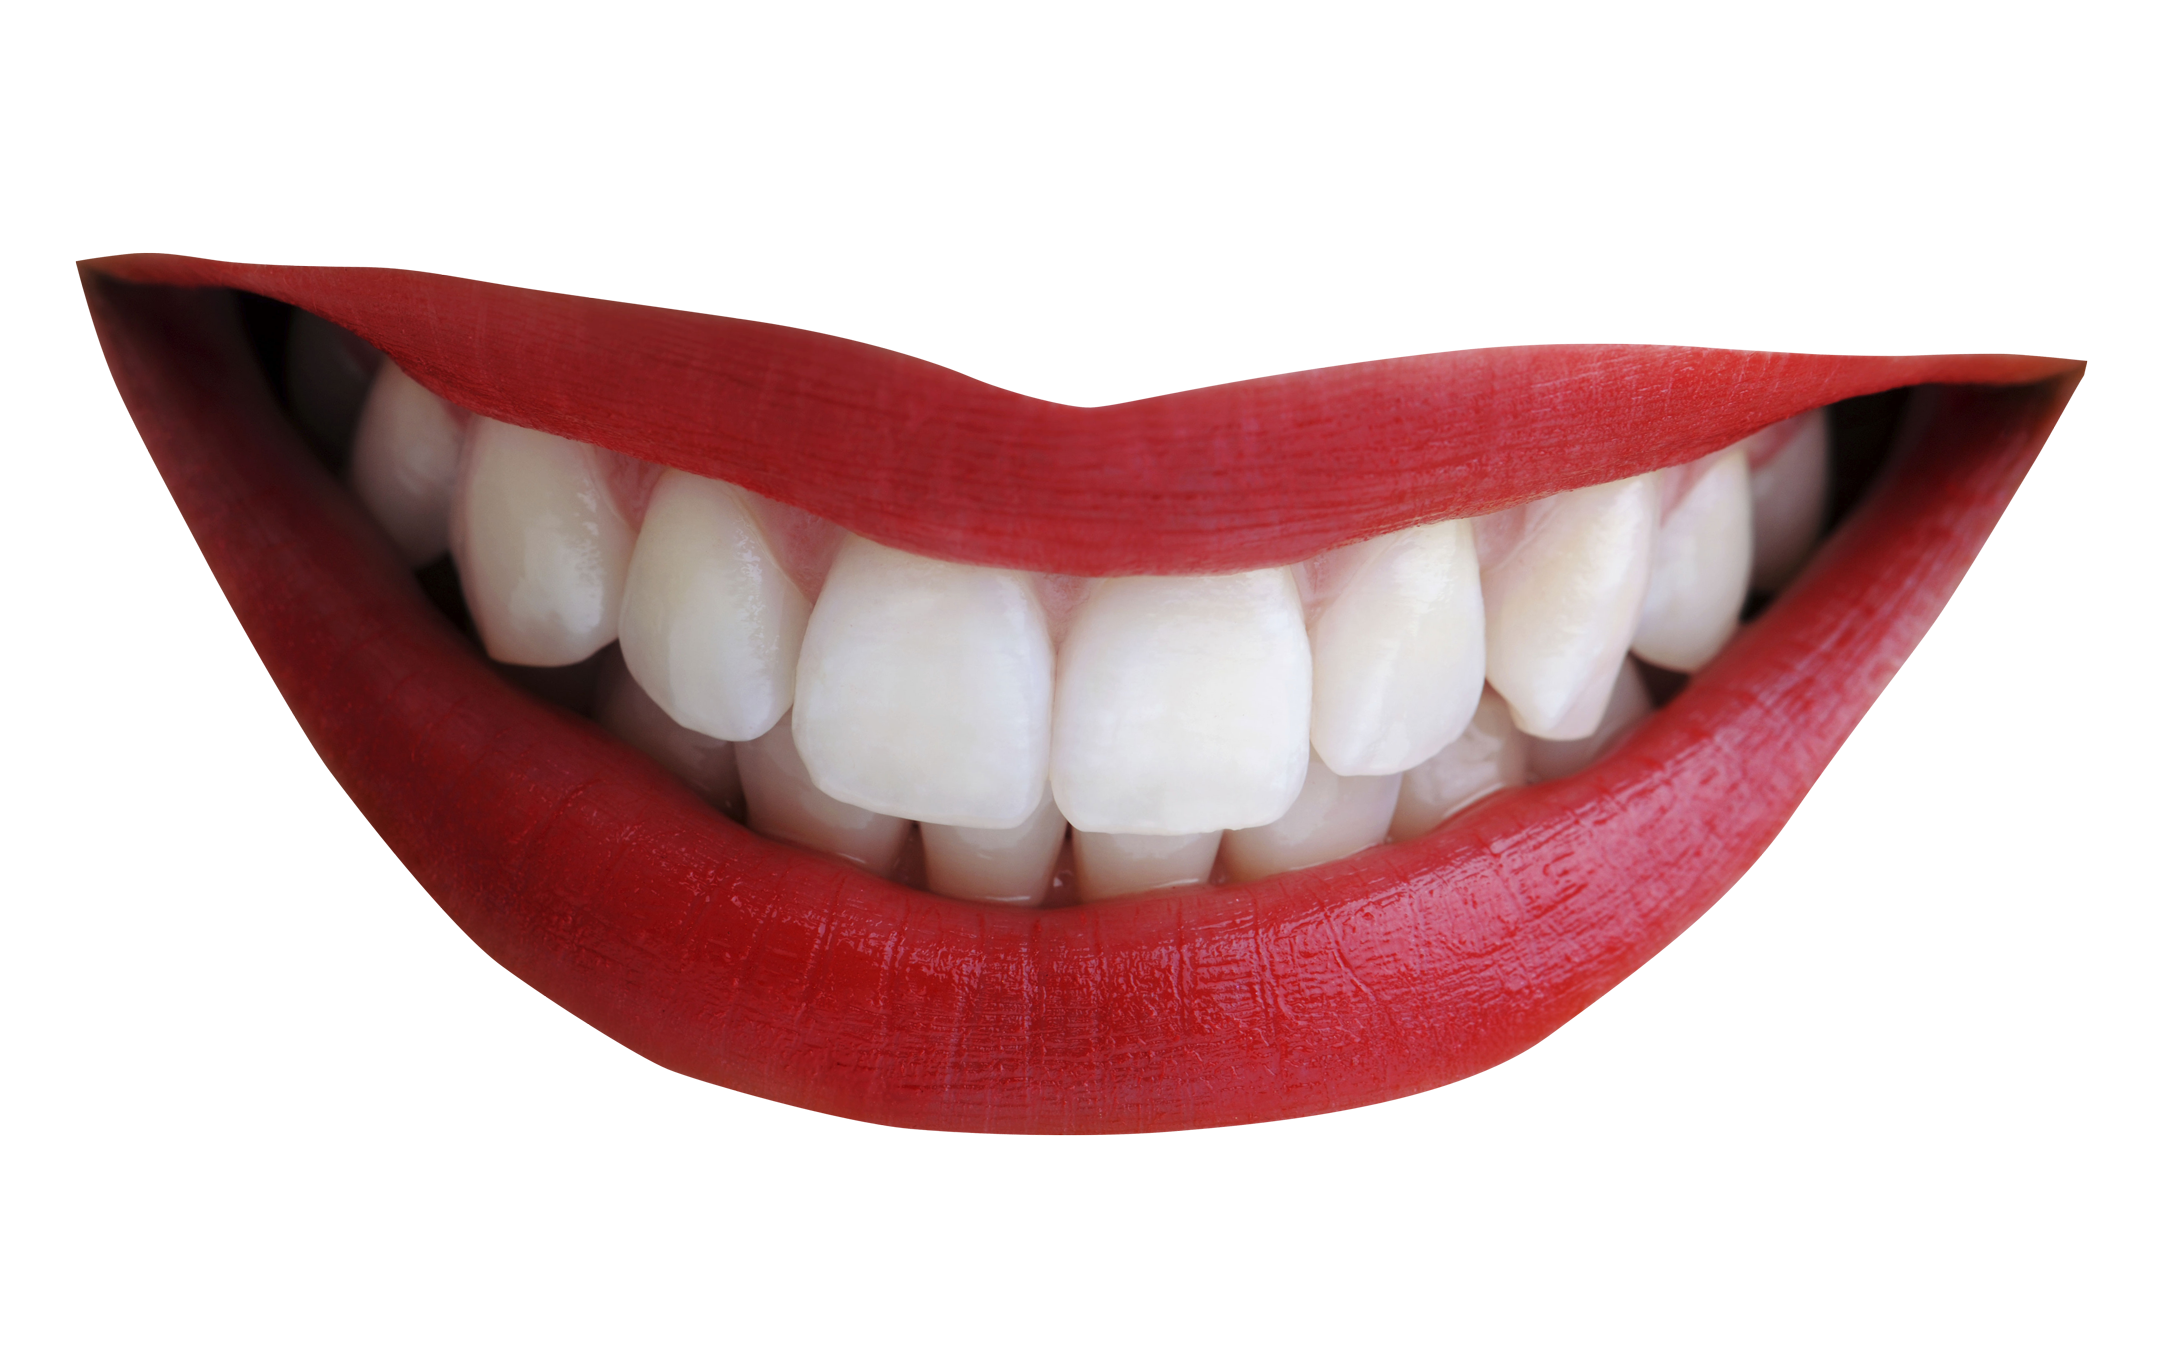 Imagen Transparente de la sonrisa del diente